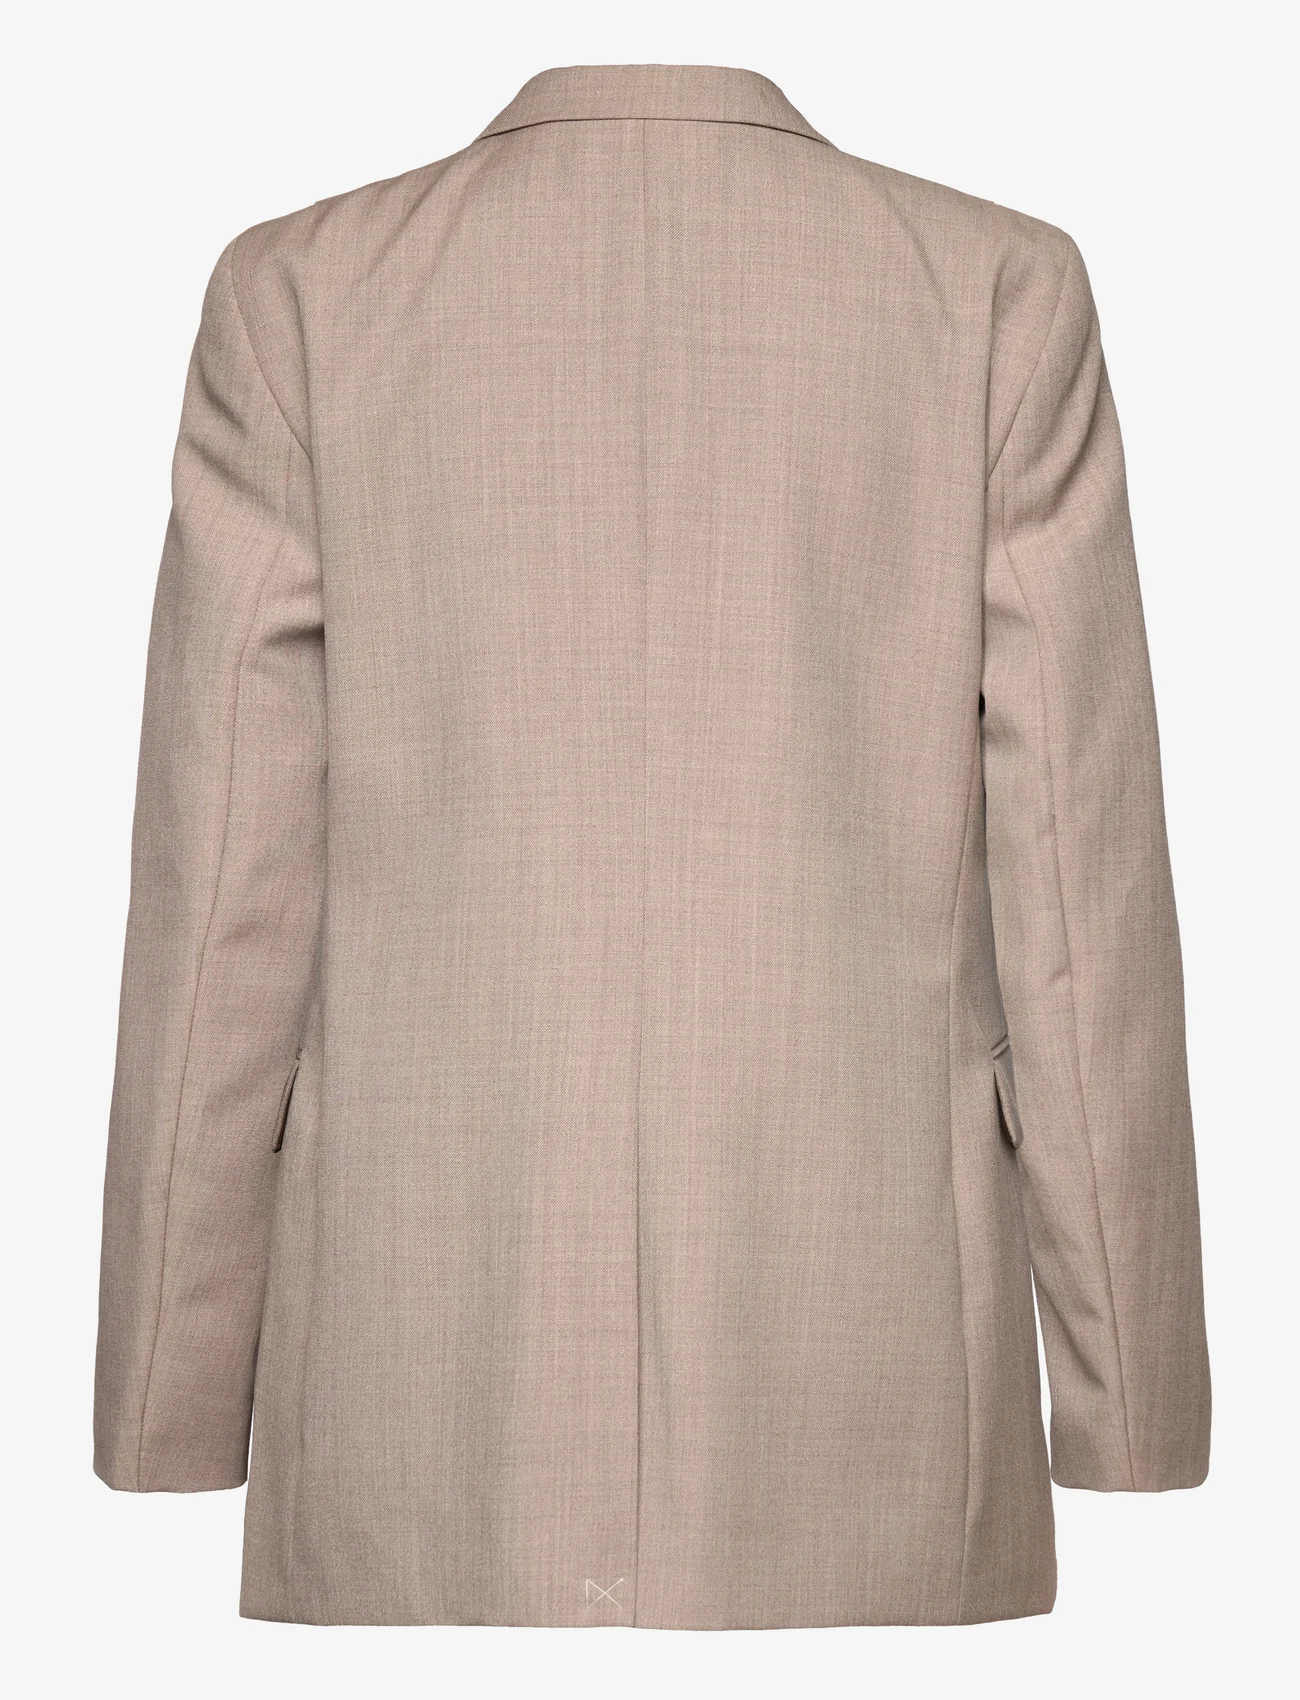 Hope - Built Up Double Breasted Blazer - feestelijke kleding voor outlet-prijzen - beige wool - 1